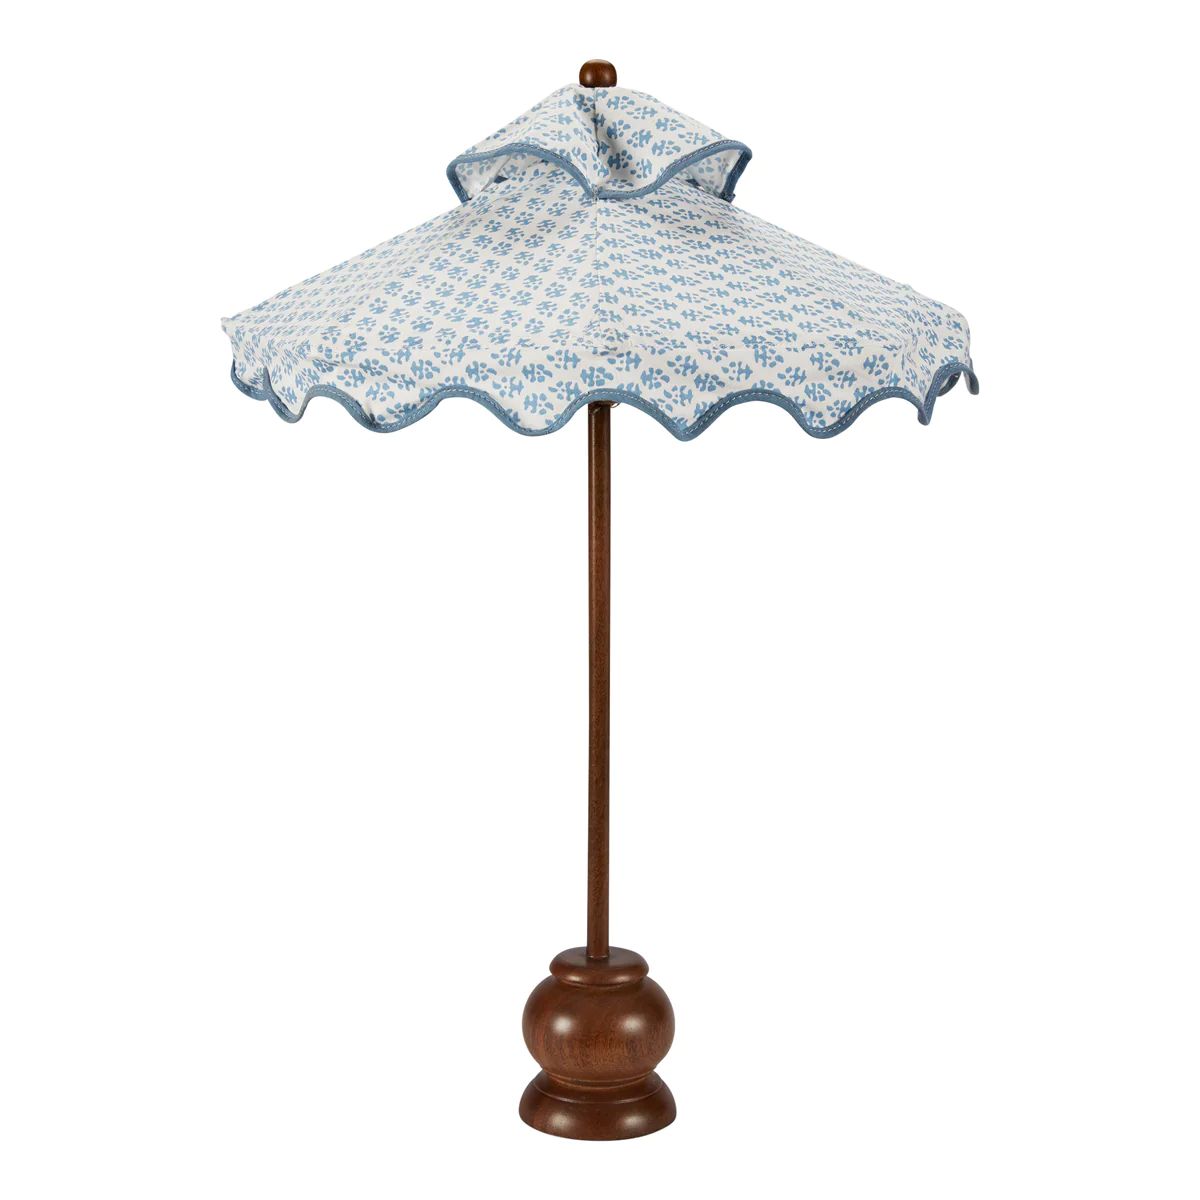 Tabletop Umbrella | Amanda Lindroth